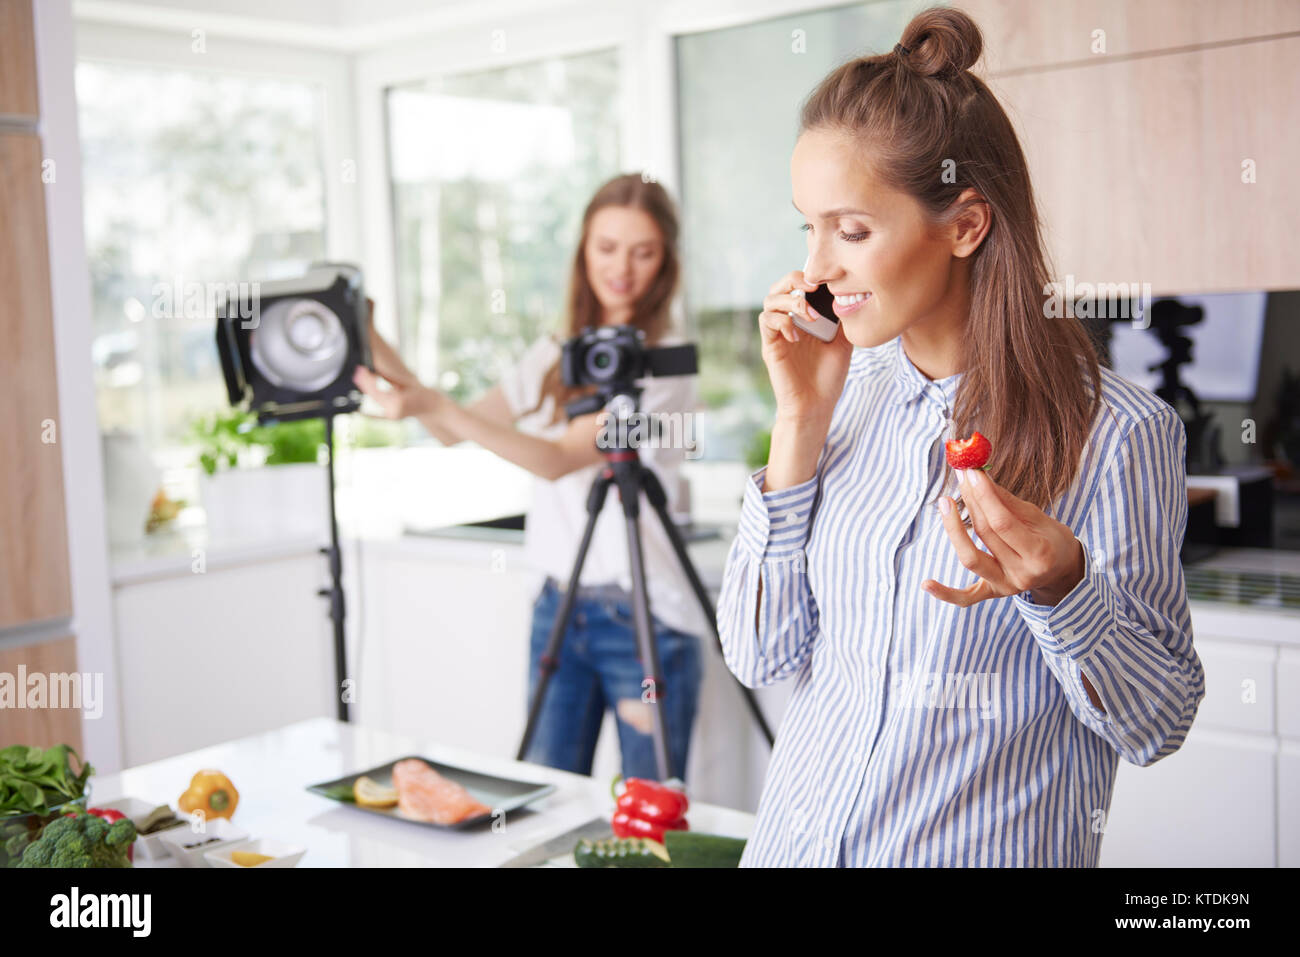 Frau am Telefon zu sprechen und Erdbeeren essen Stockfoto